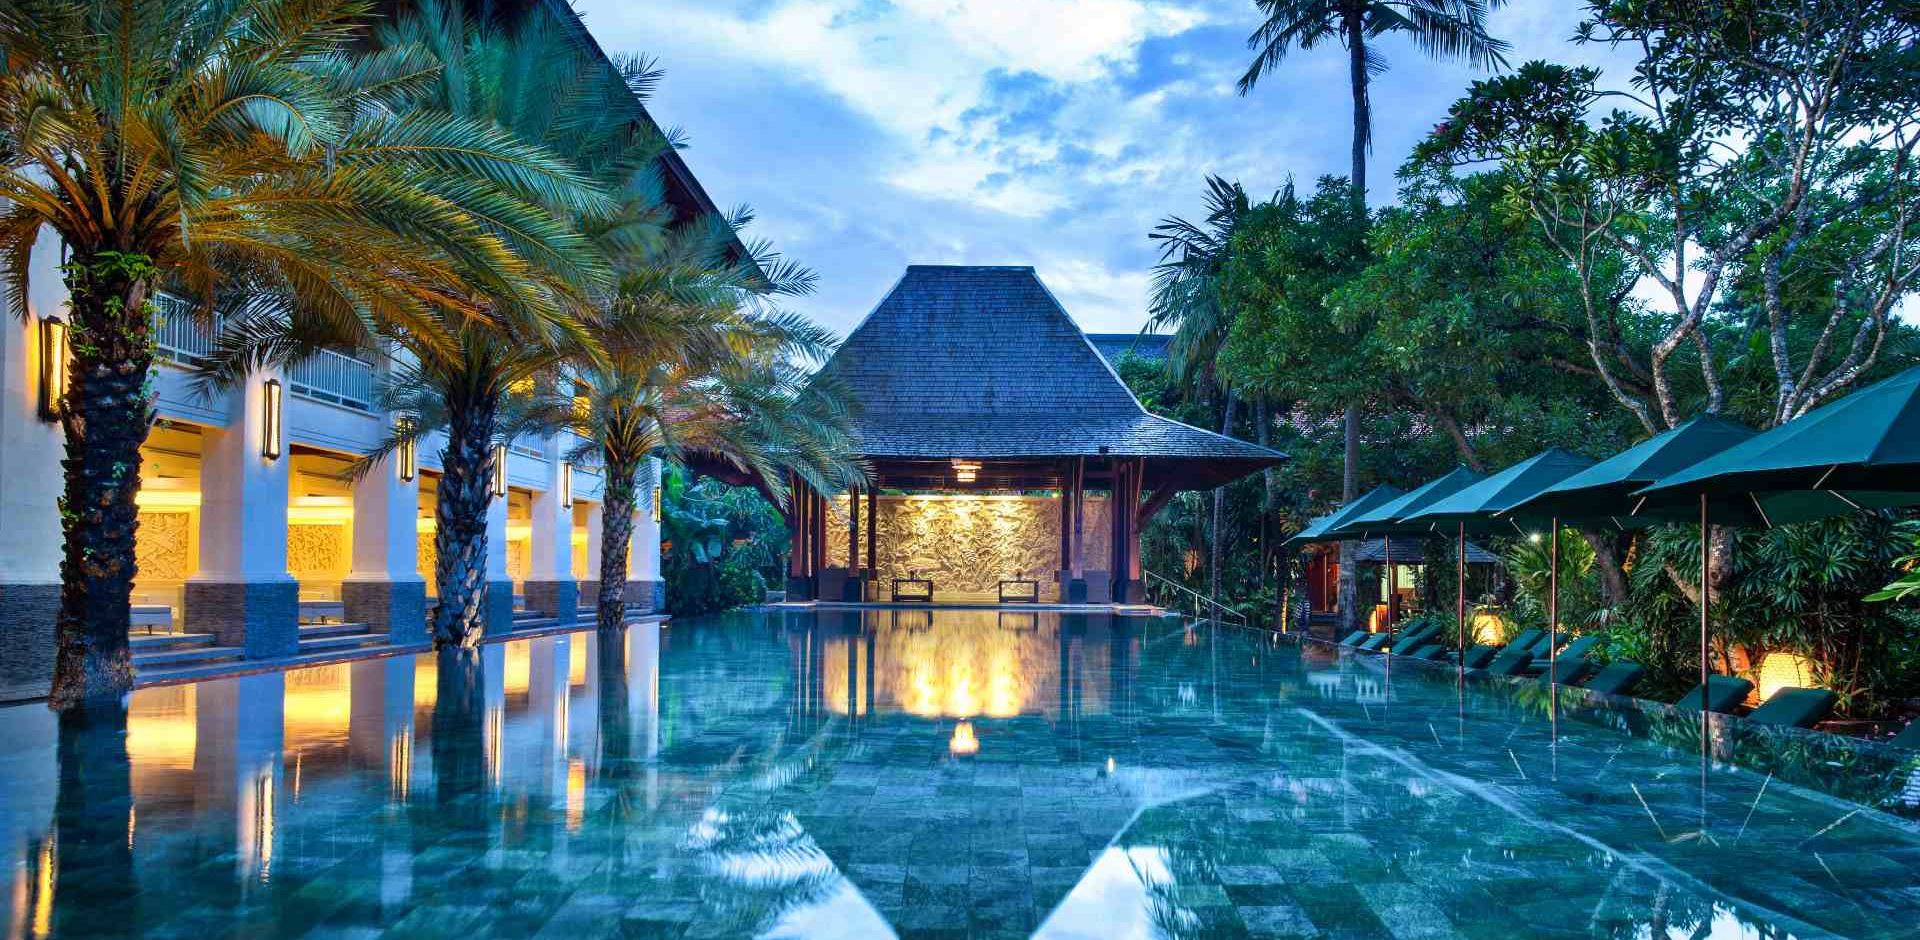 Indonesien Bali Sanur Puri Santrian, Pool Area, Pool Område